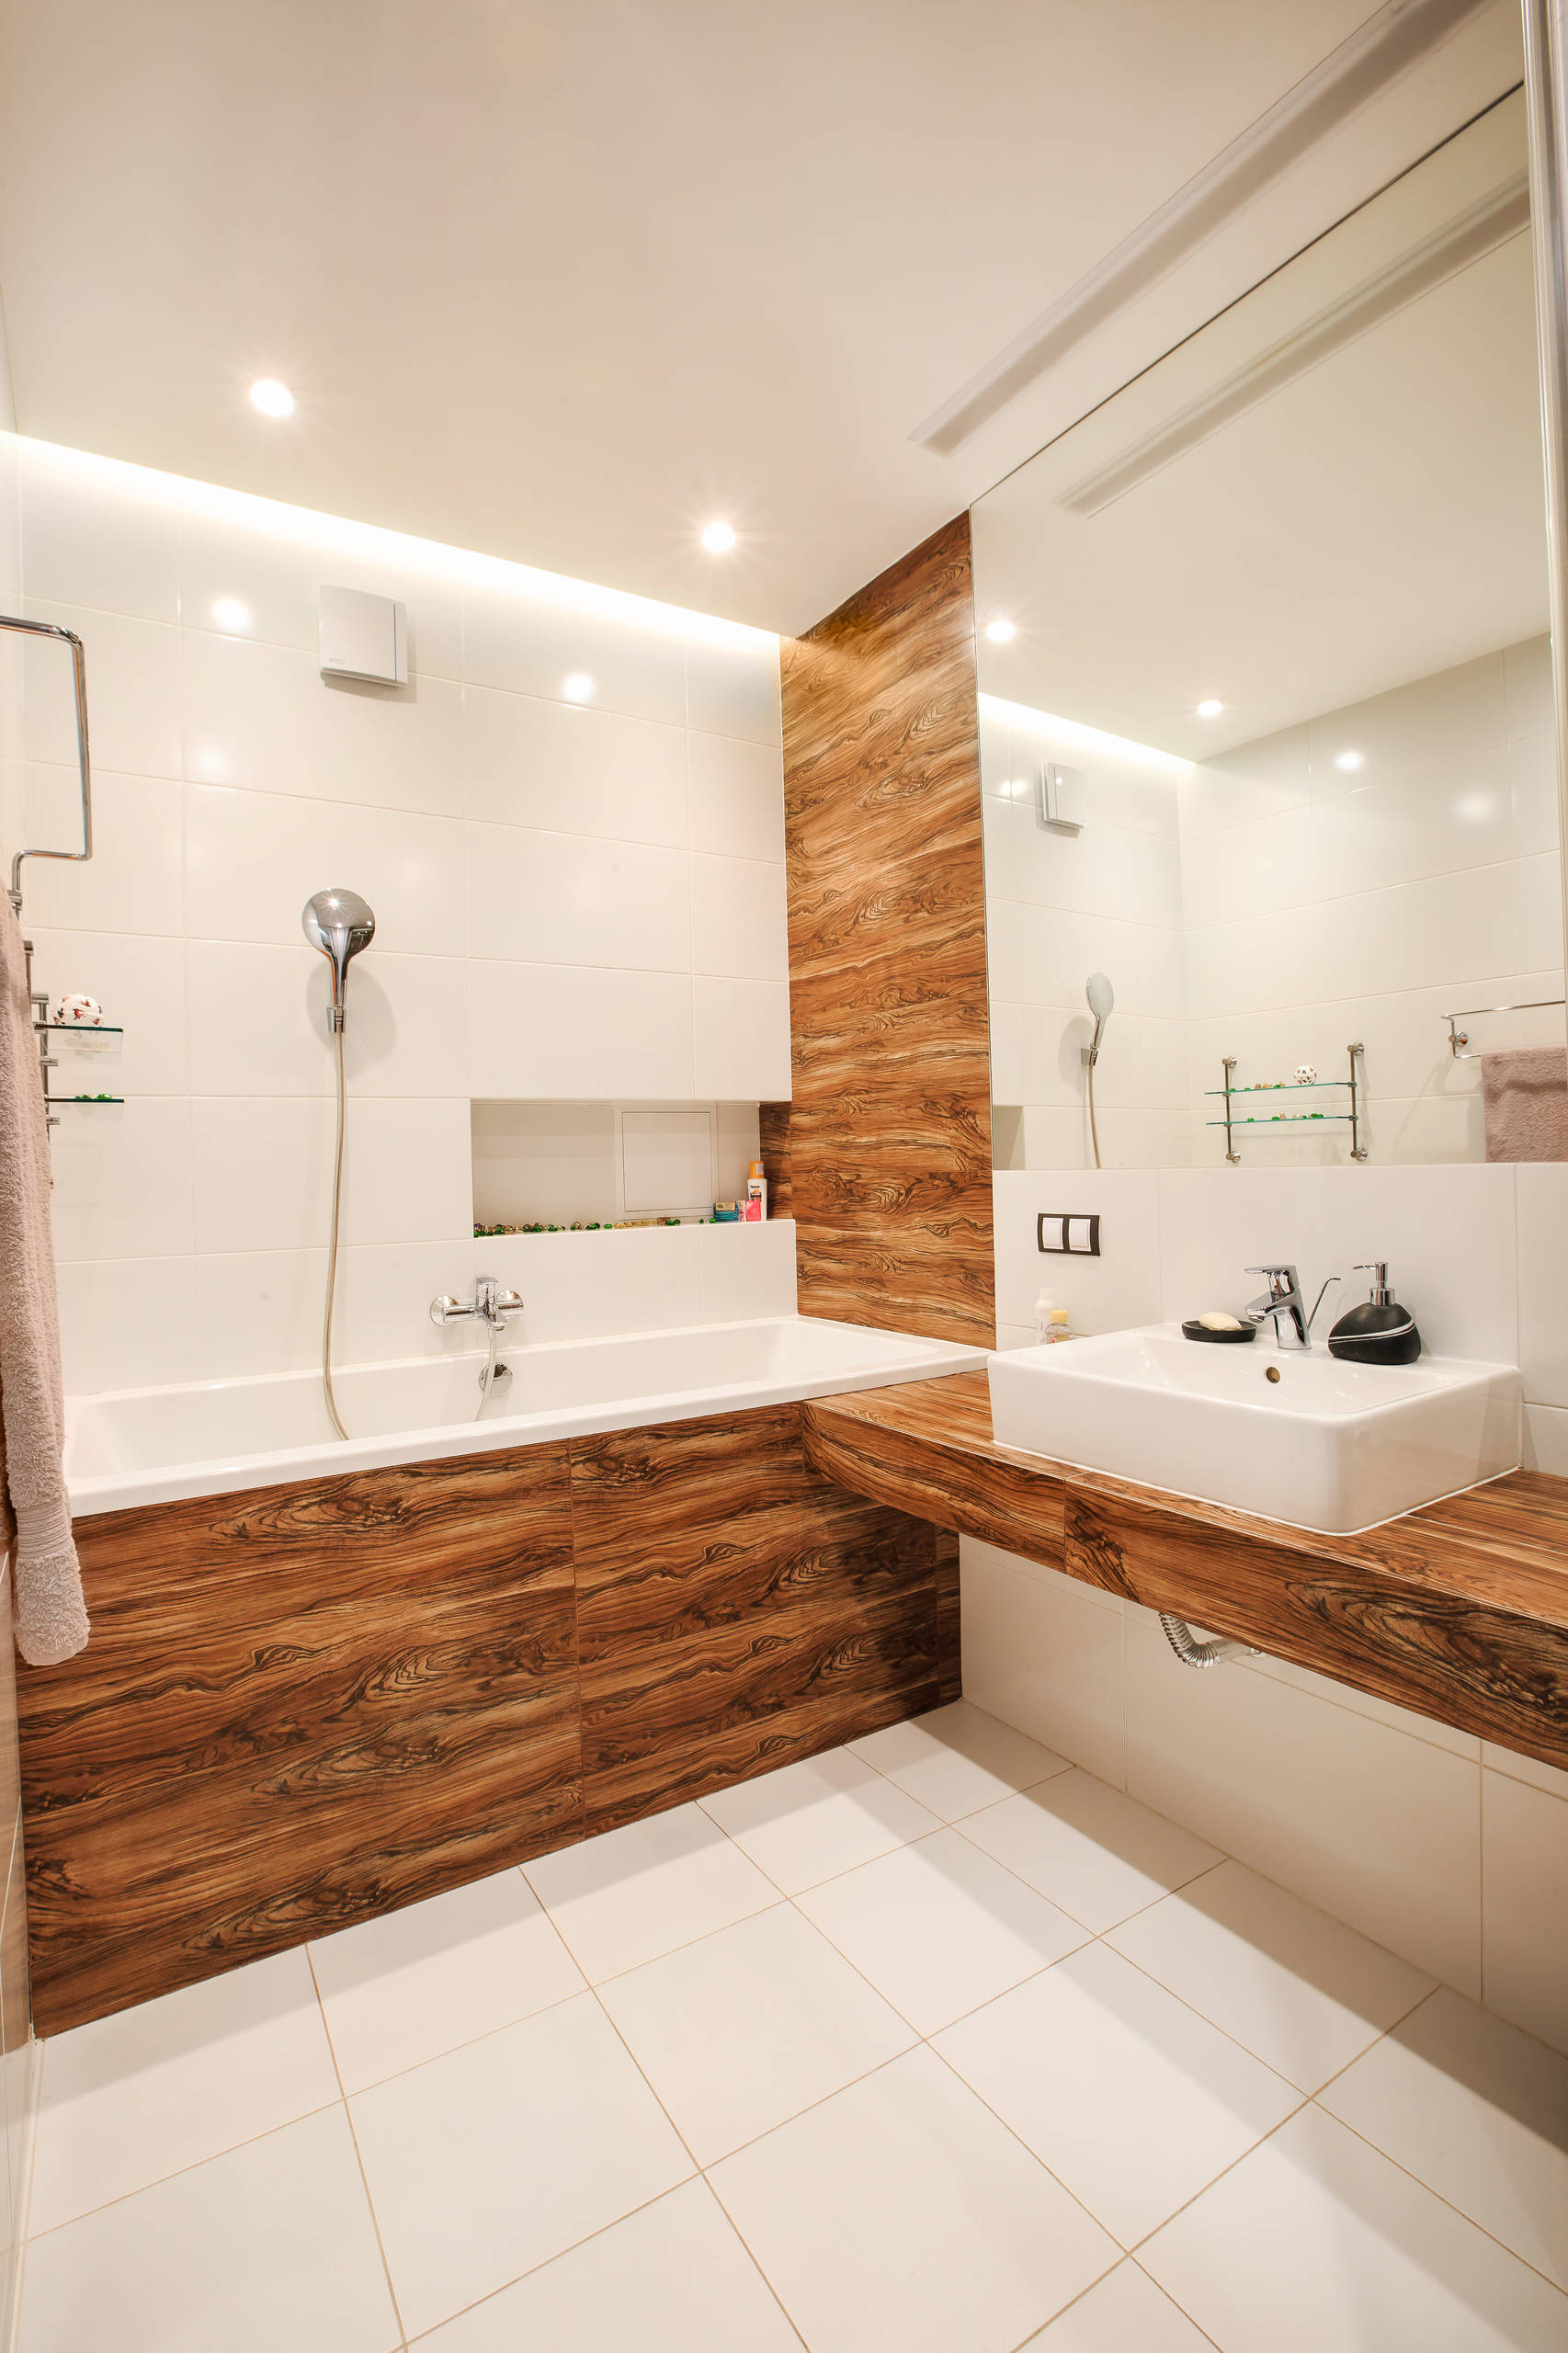 Обновляем дизайн ванной комнаты - ТОП новинок в сантехнике